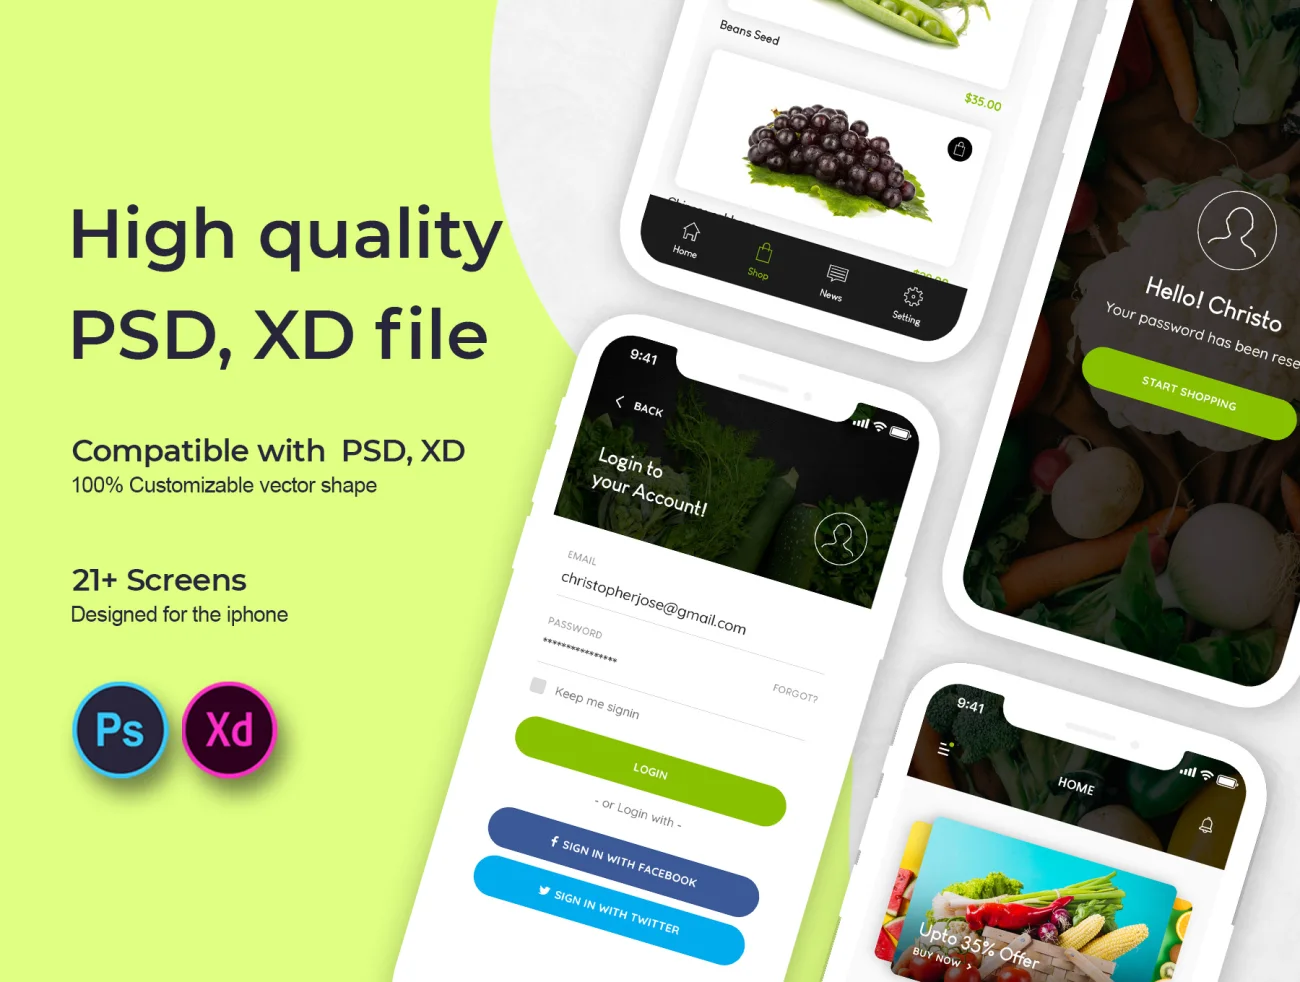 Fluda App Ui Kit XD 21屏有机蔬菜水果在线商店手机应用Ui设计套件XD-UI/UX-到位啦UI